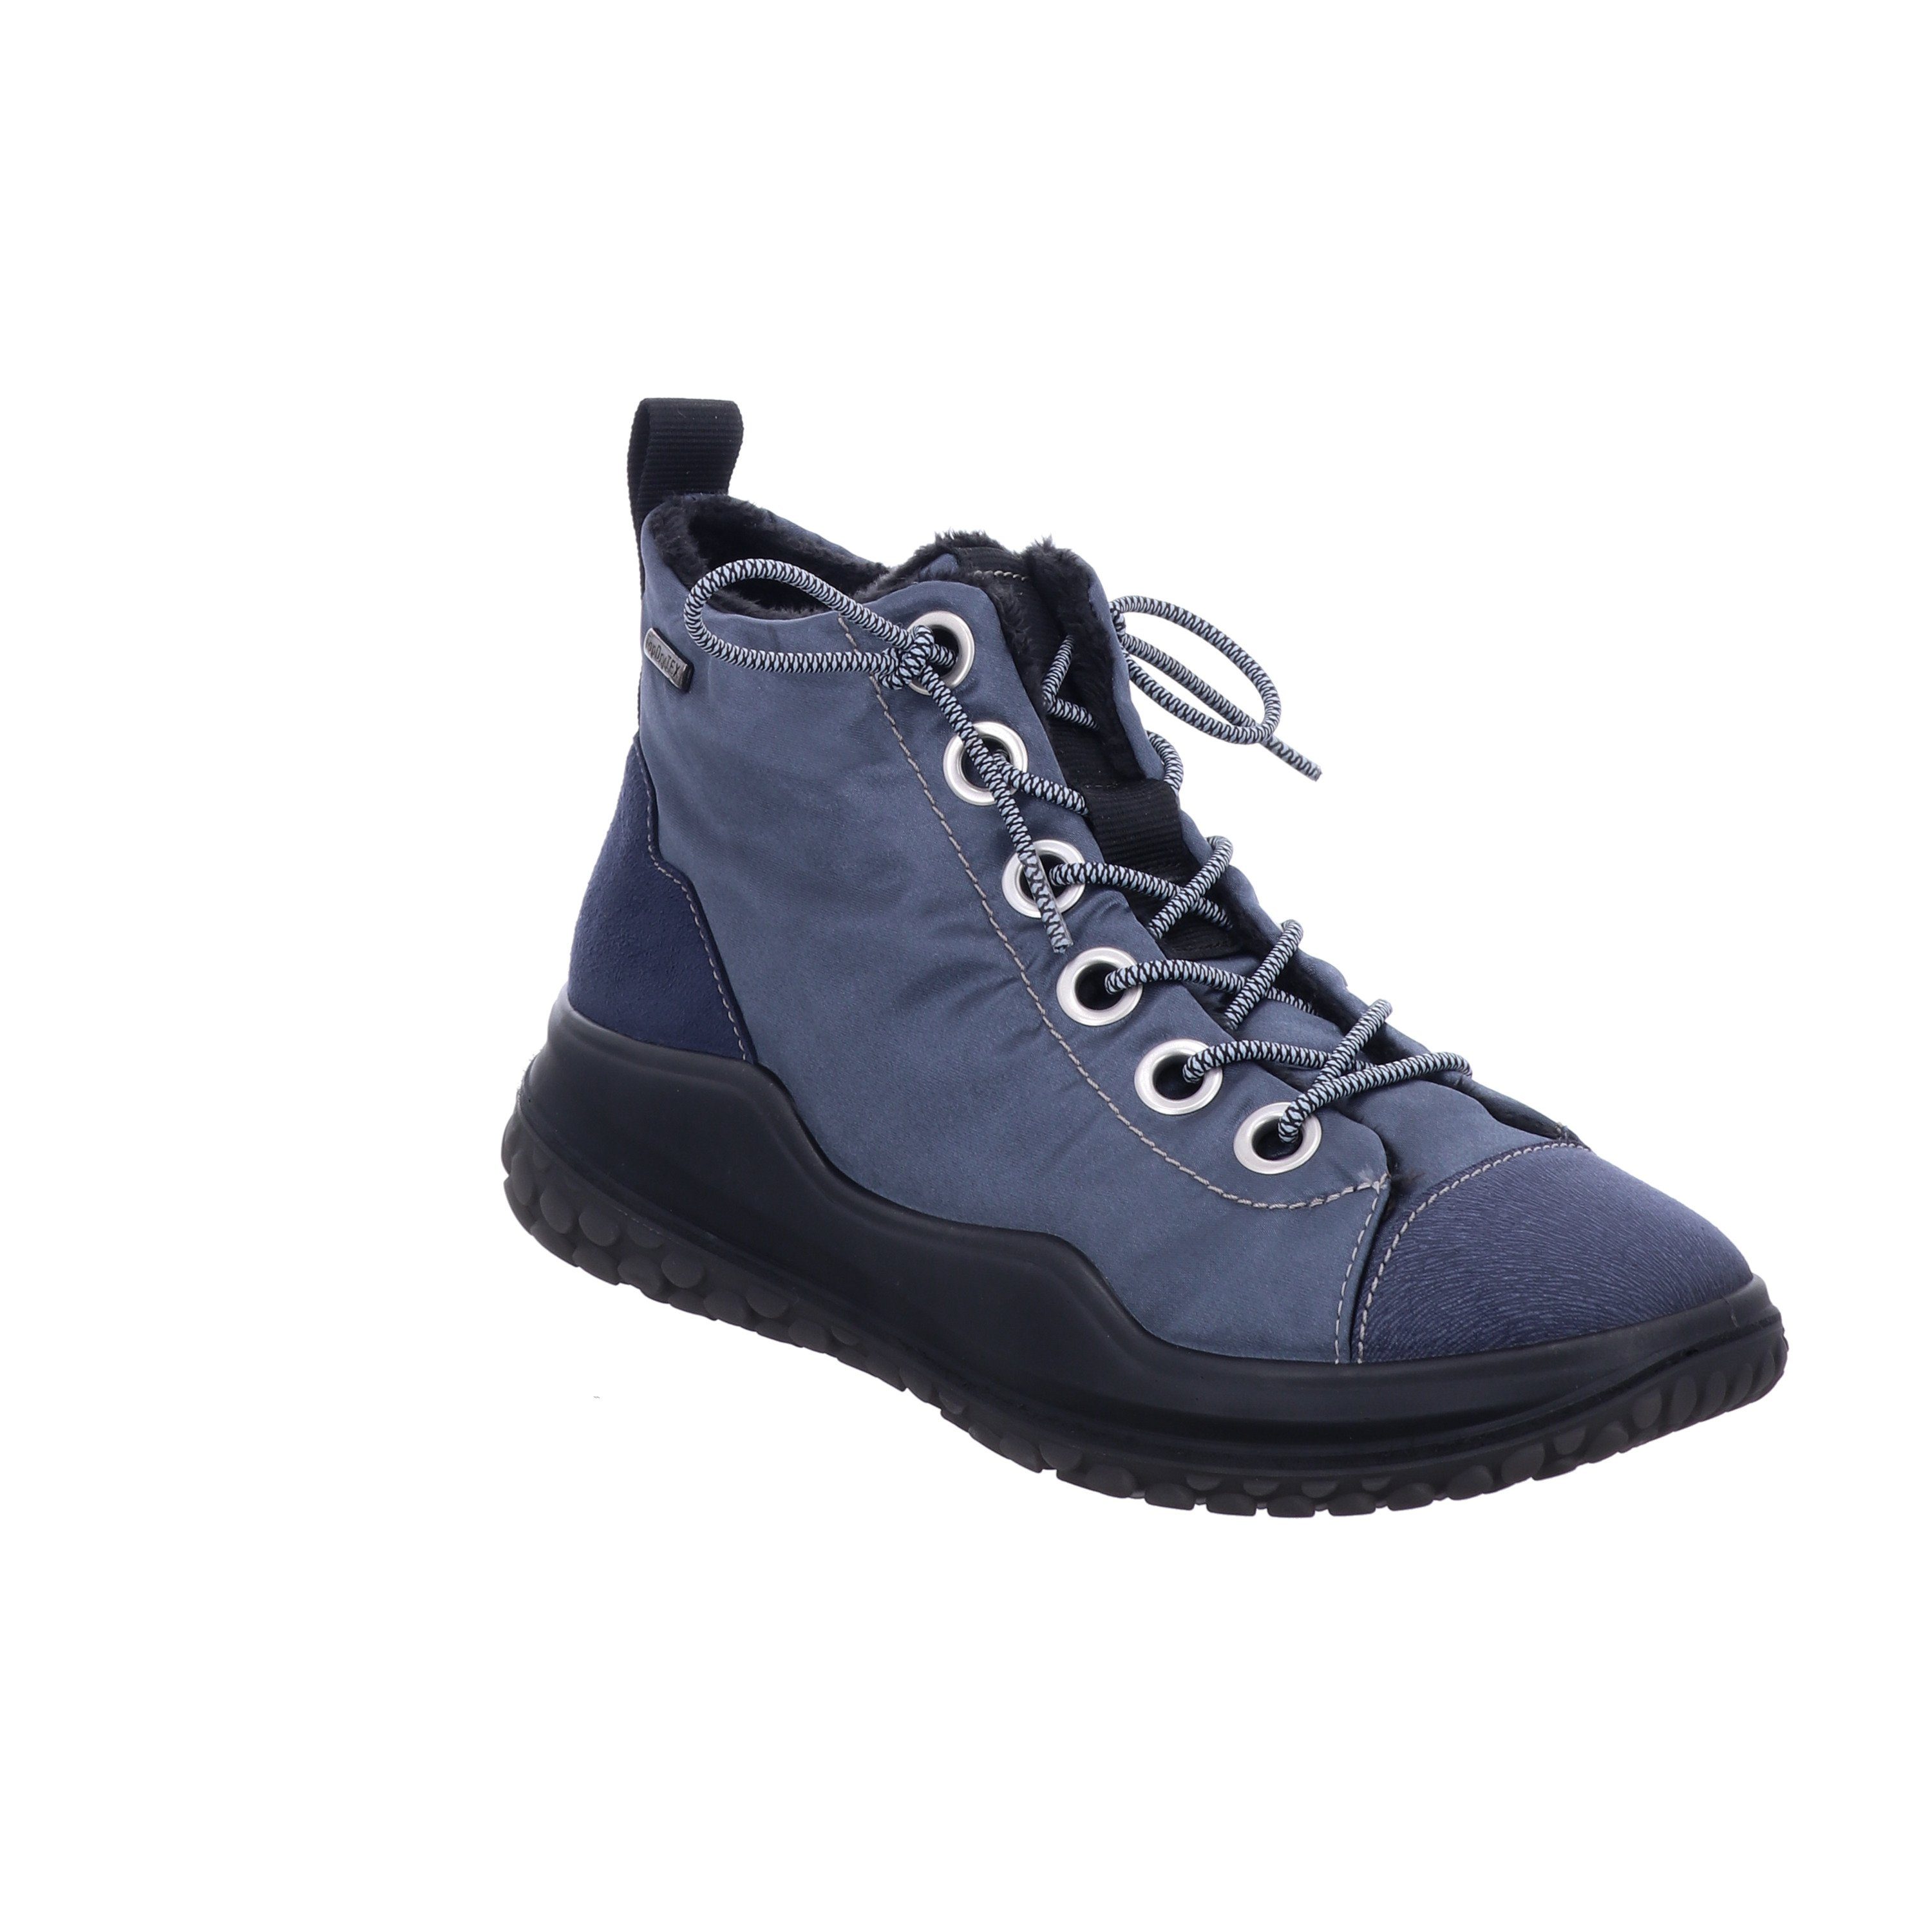 Schuhe Stiefeletten Westland Marla W17, dunkelblau Stiefelette